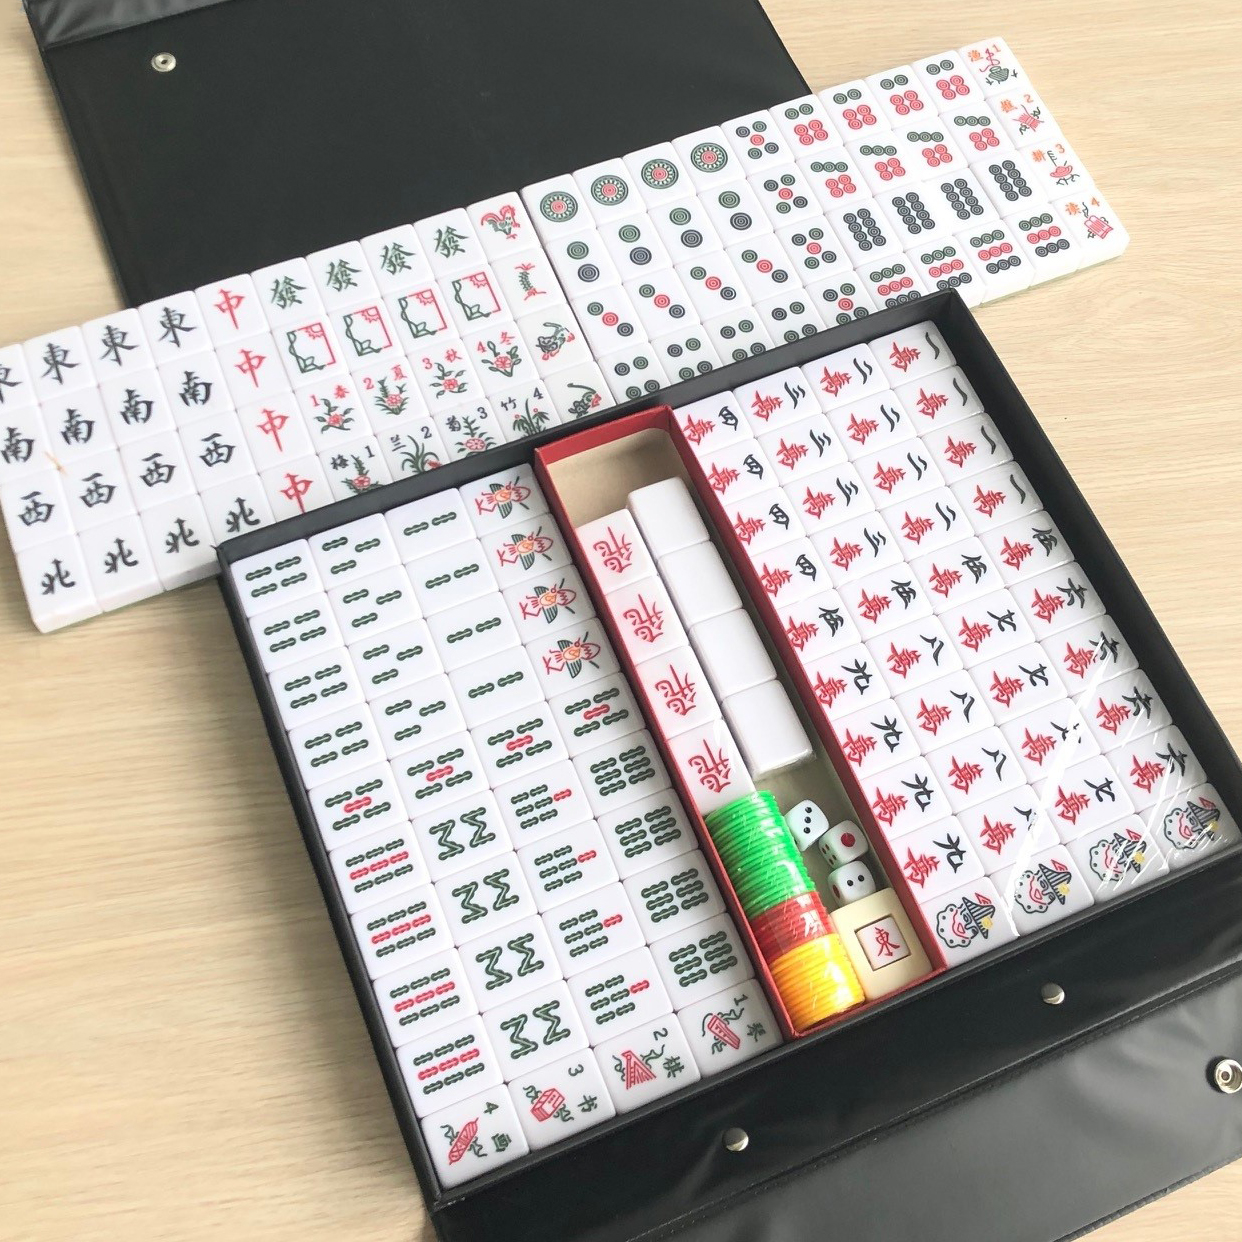 Qoo10 - Brand New Premium Traditional Jade Mahjong Set. Local SG